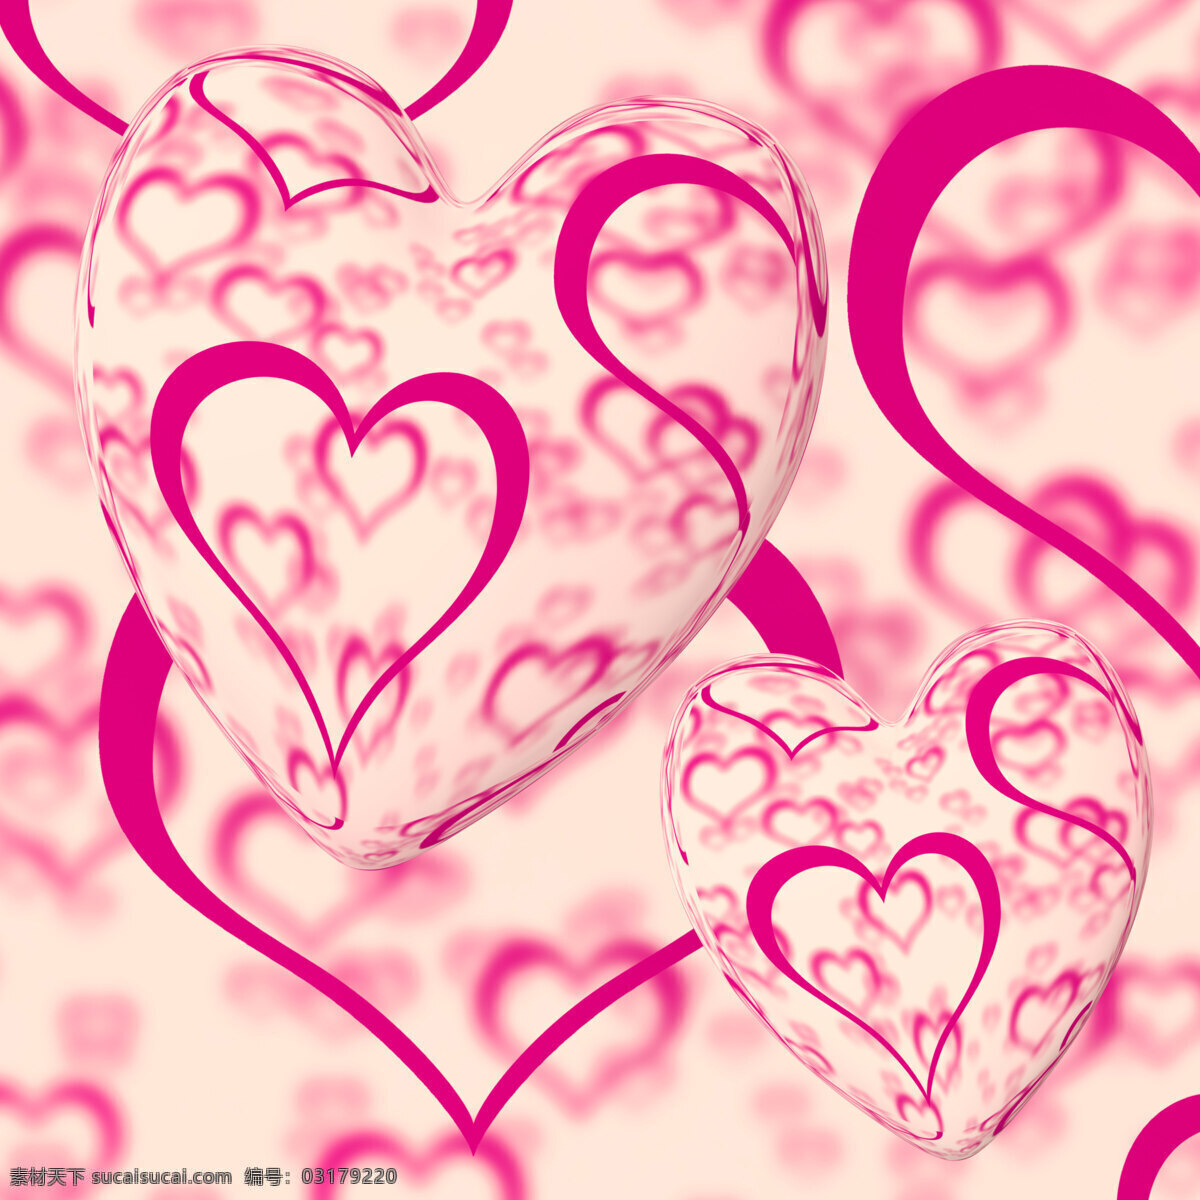 粉红色 心形 背景 显示 心脏 浪漫 爱情 情怀 文化艺术